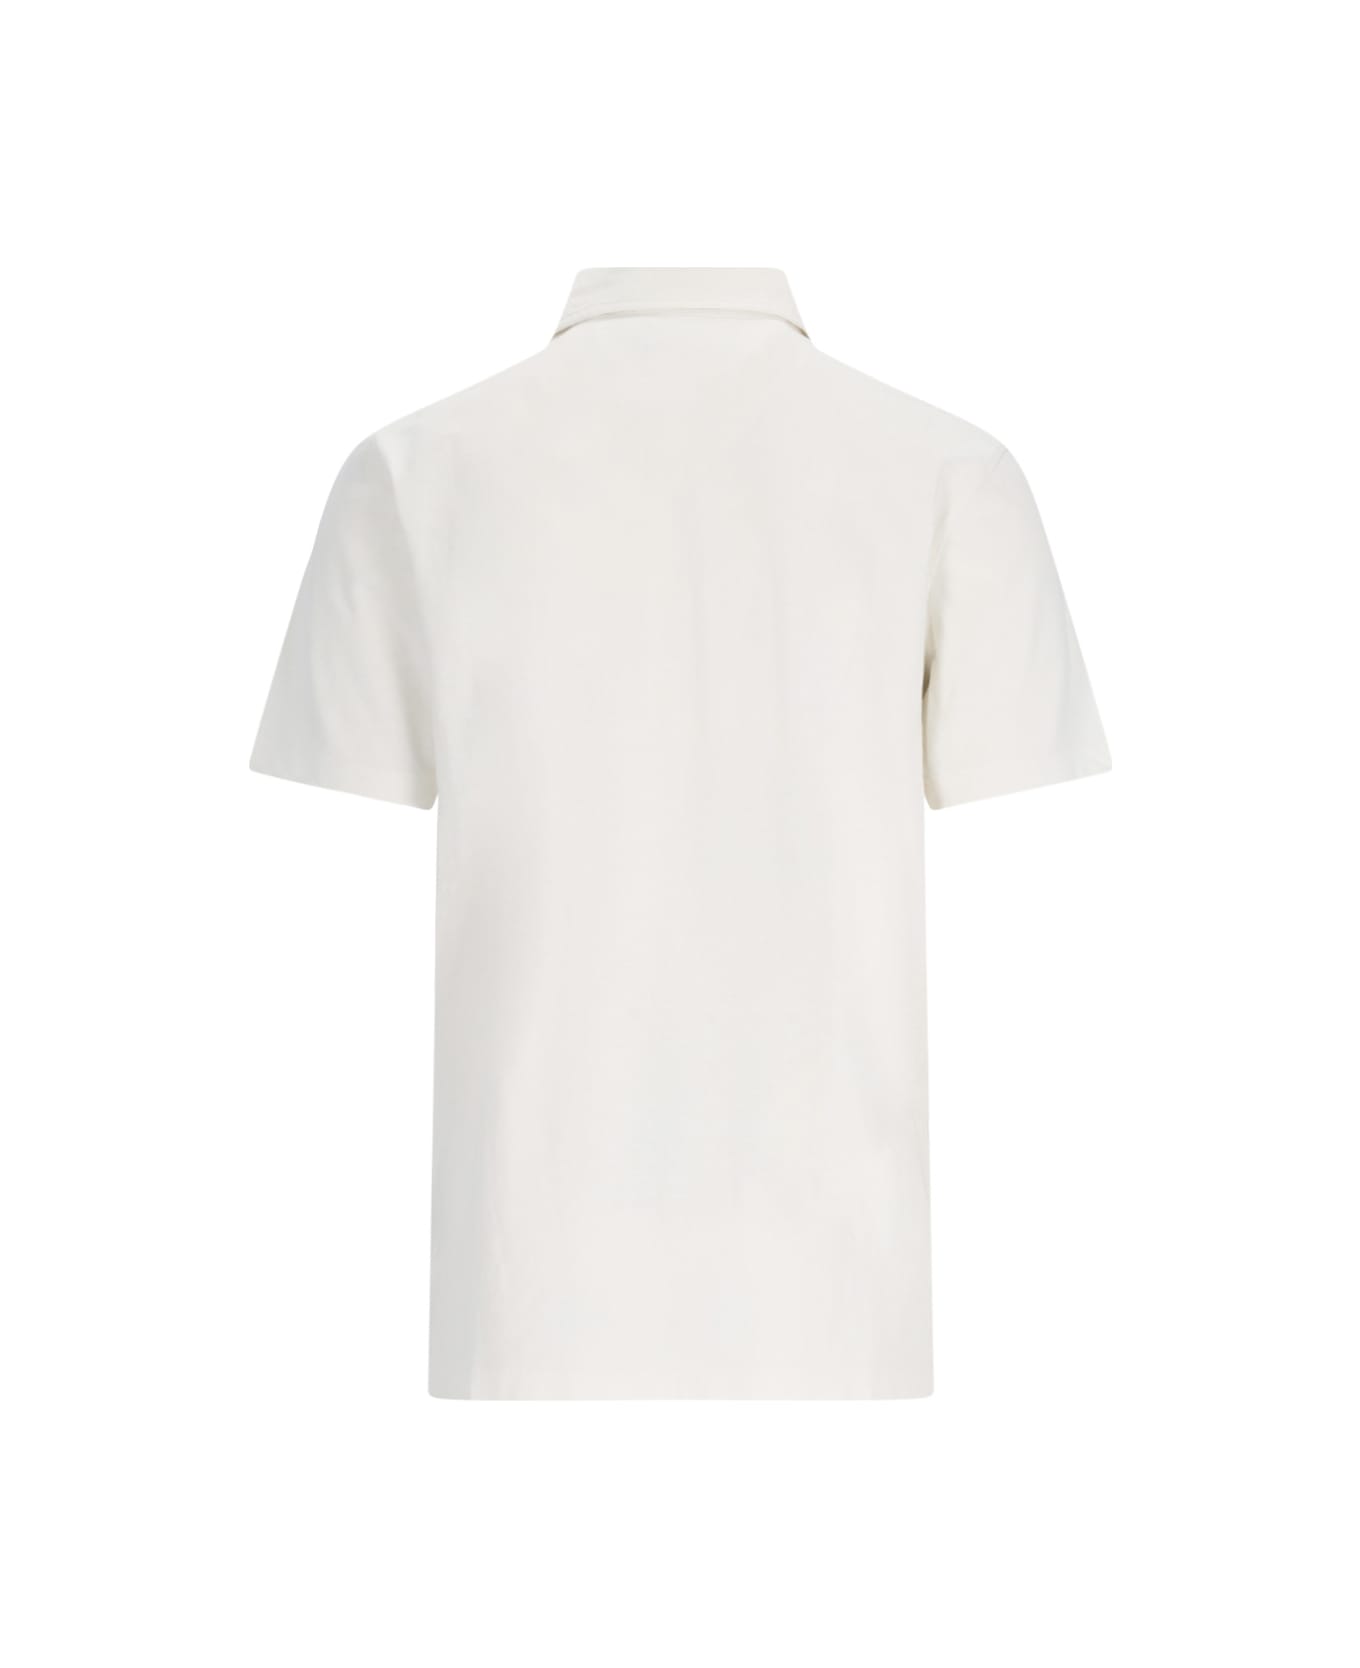 Polo Ralph Lauren Logo Polo Shirt - White